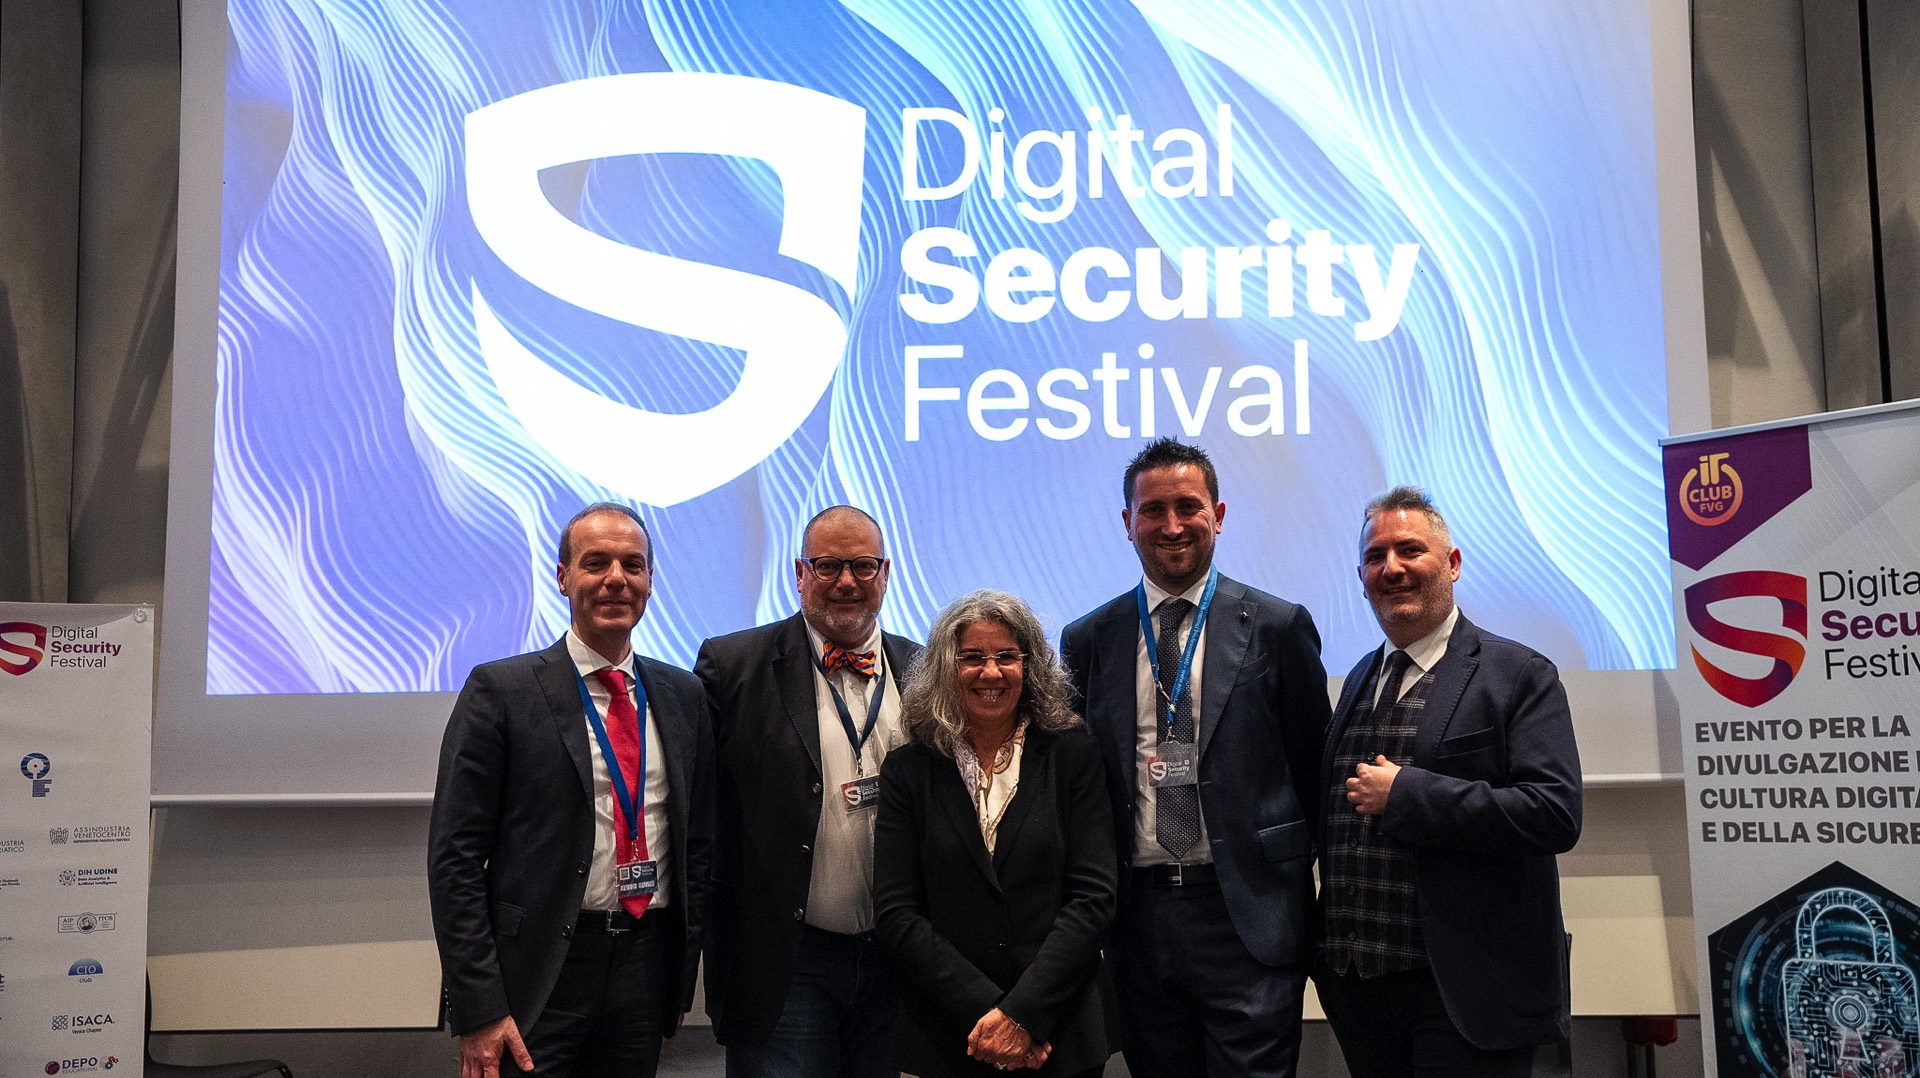 Digital Security Festival, patrocinato da Italiamac, chiude una edizione da record 9